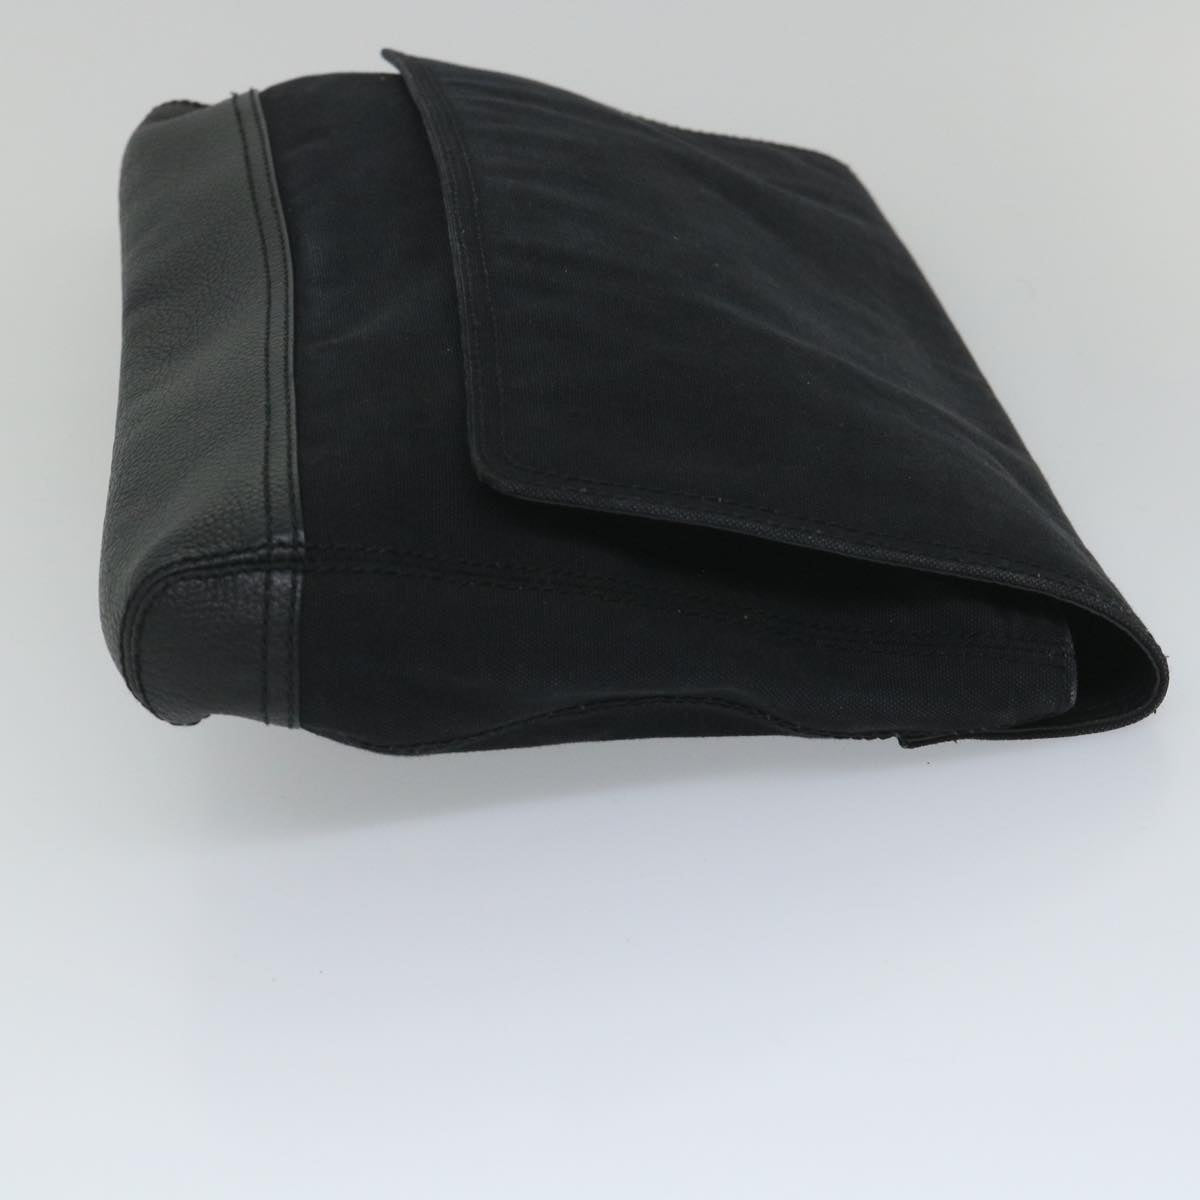 BALENCIAGA Clutch Bag Canvas Black Auth bs9026